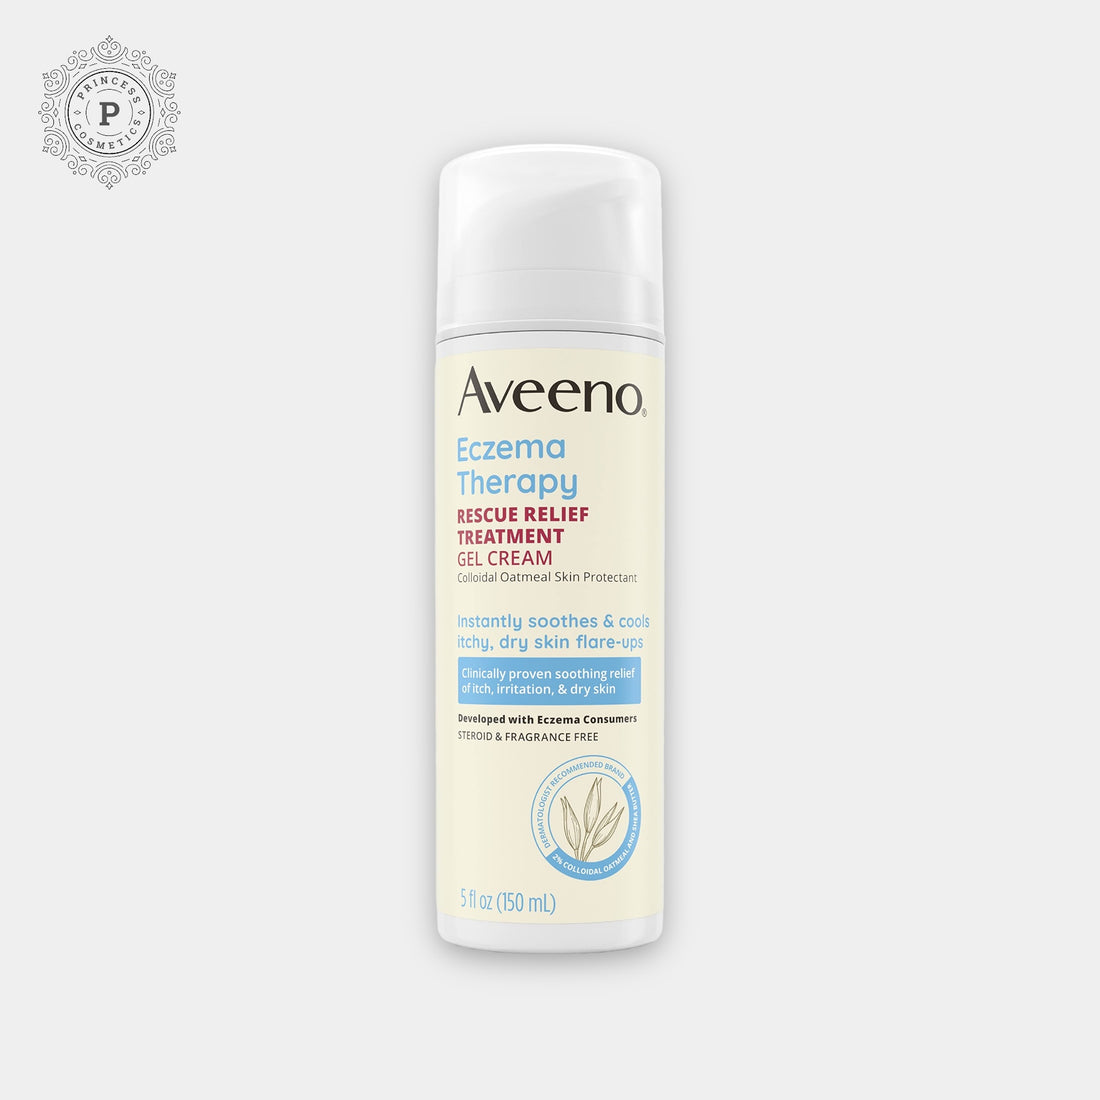 Aveeno Eczema Therapy Rescue Relief Treatment Gel Cream 150ml